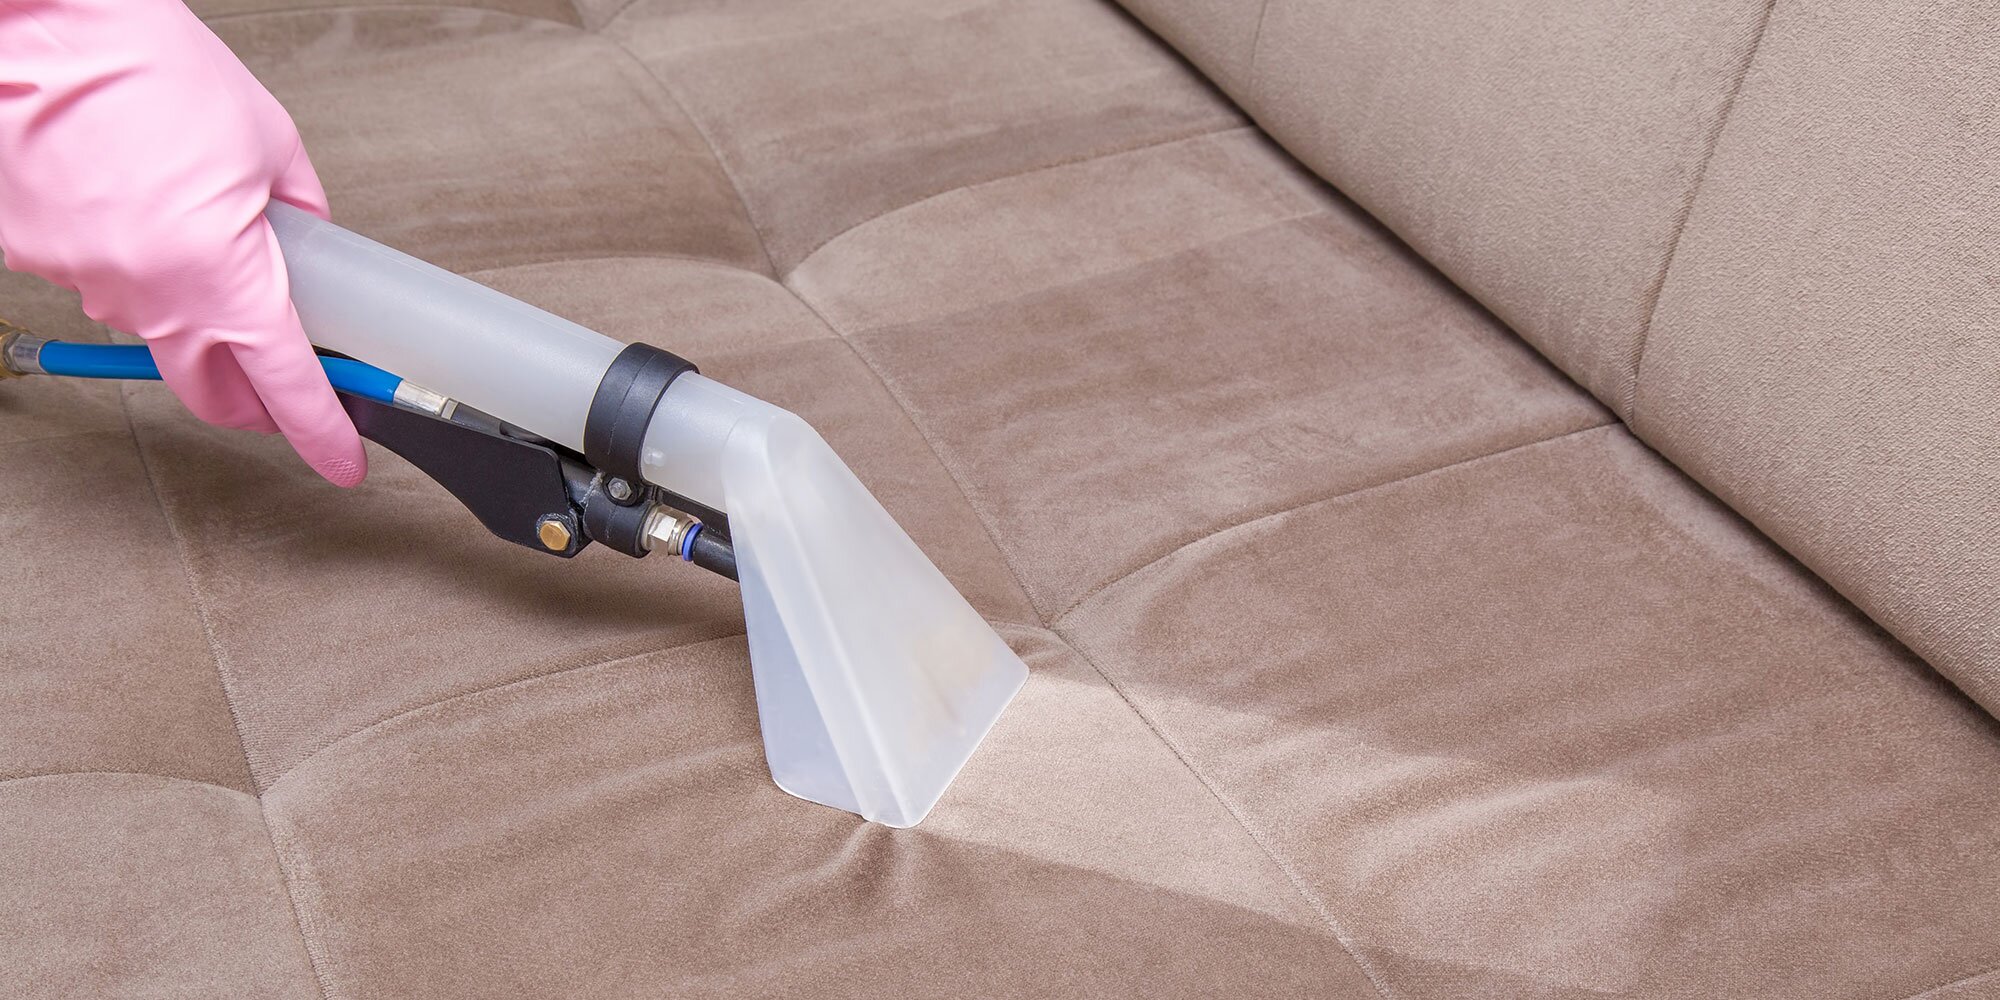 Бизнес идея: чистка ковров и мягкой мебели - GrandActive